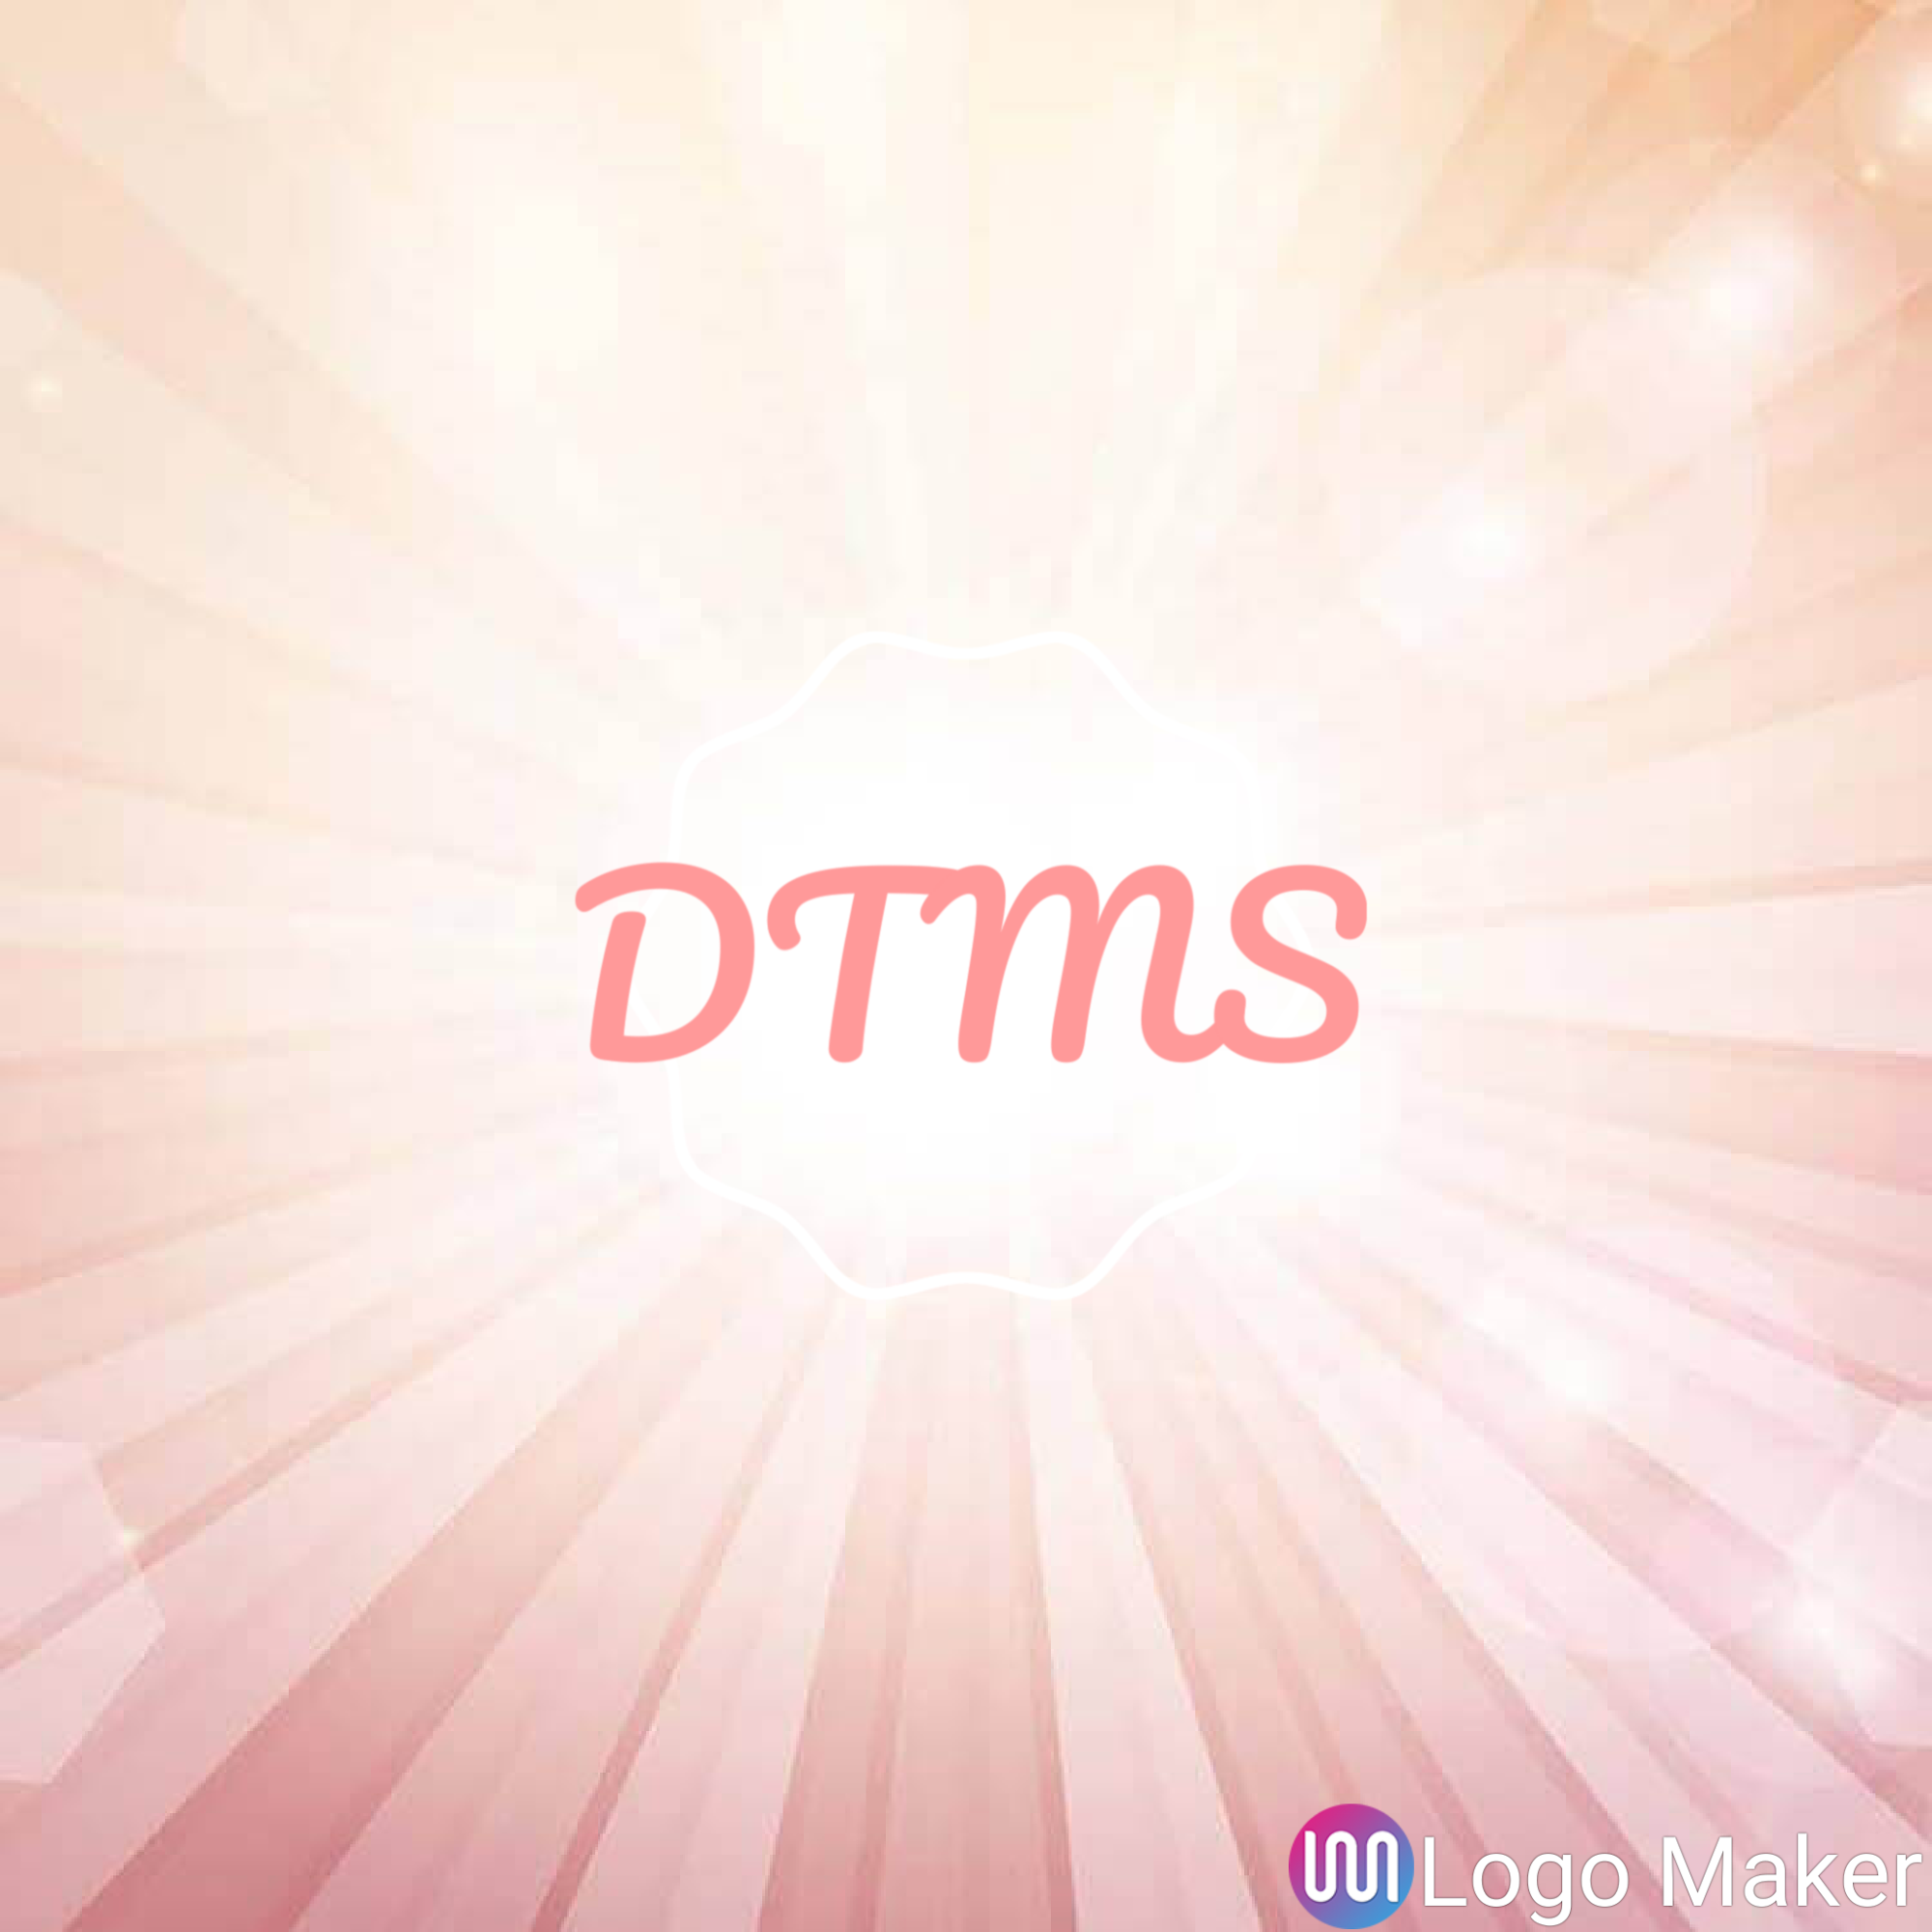 DTMS PC'S